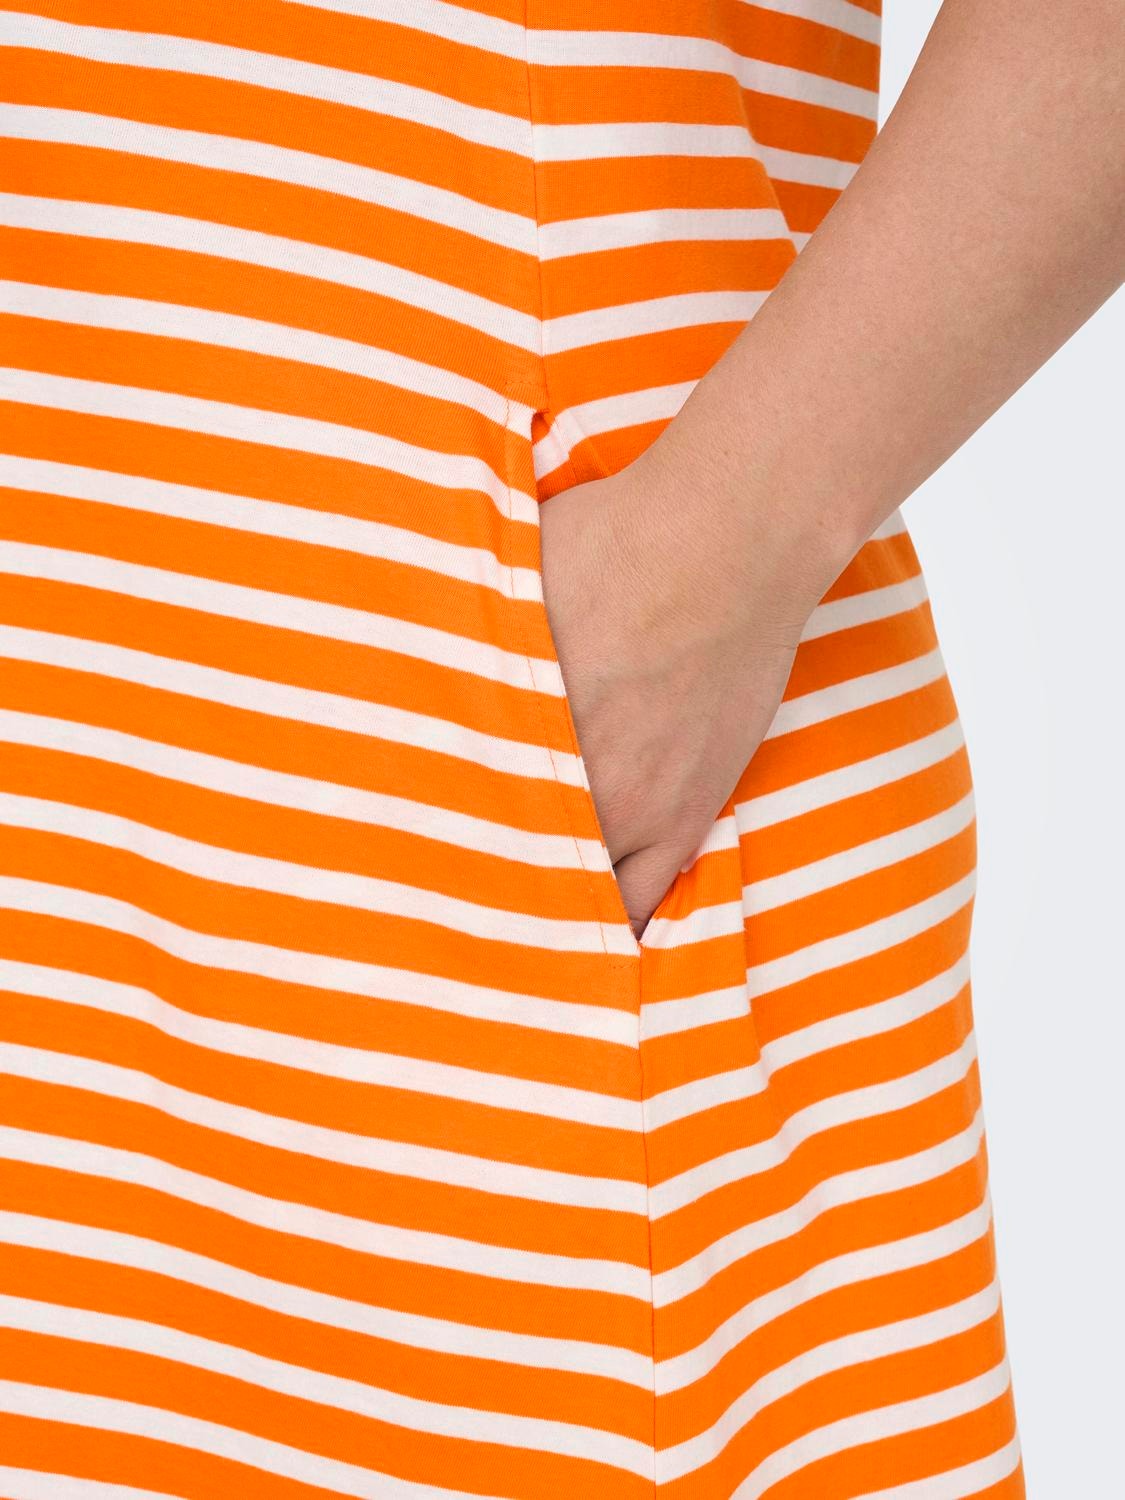 ONLY Vestido corto Corte regular Cuello redondo Curve -Orange Peel - 15287992